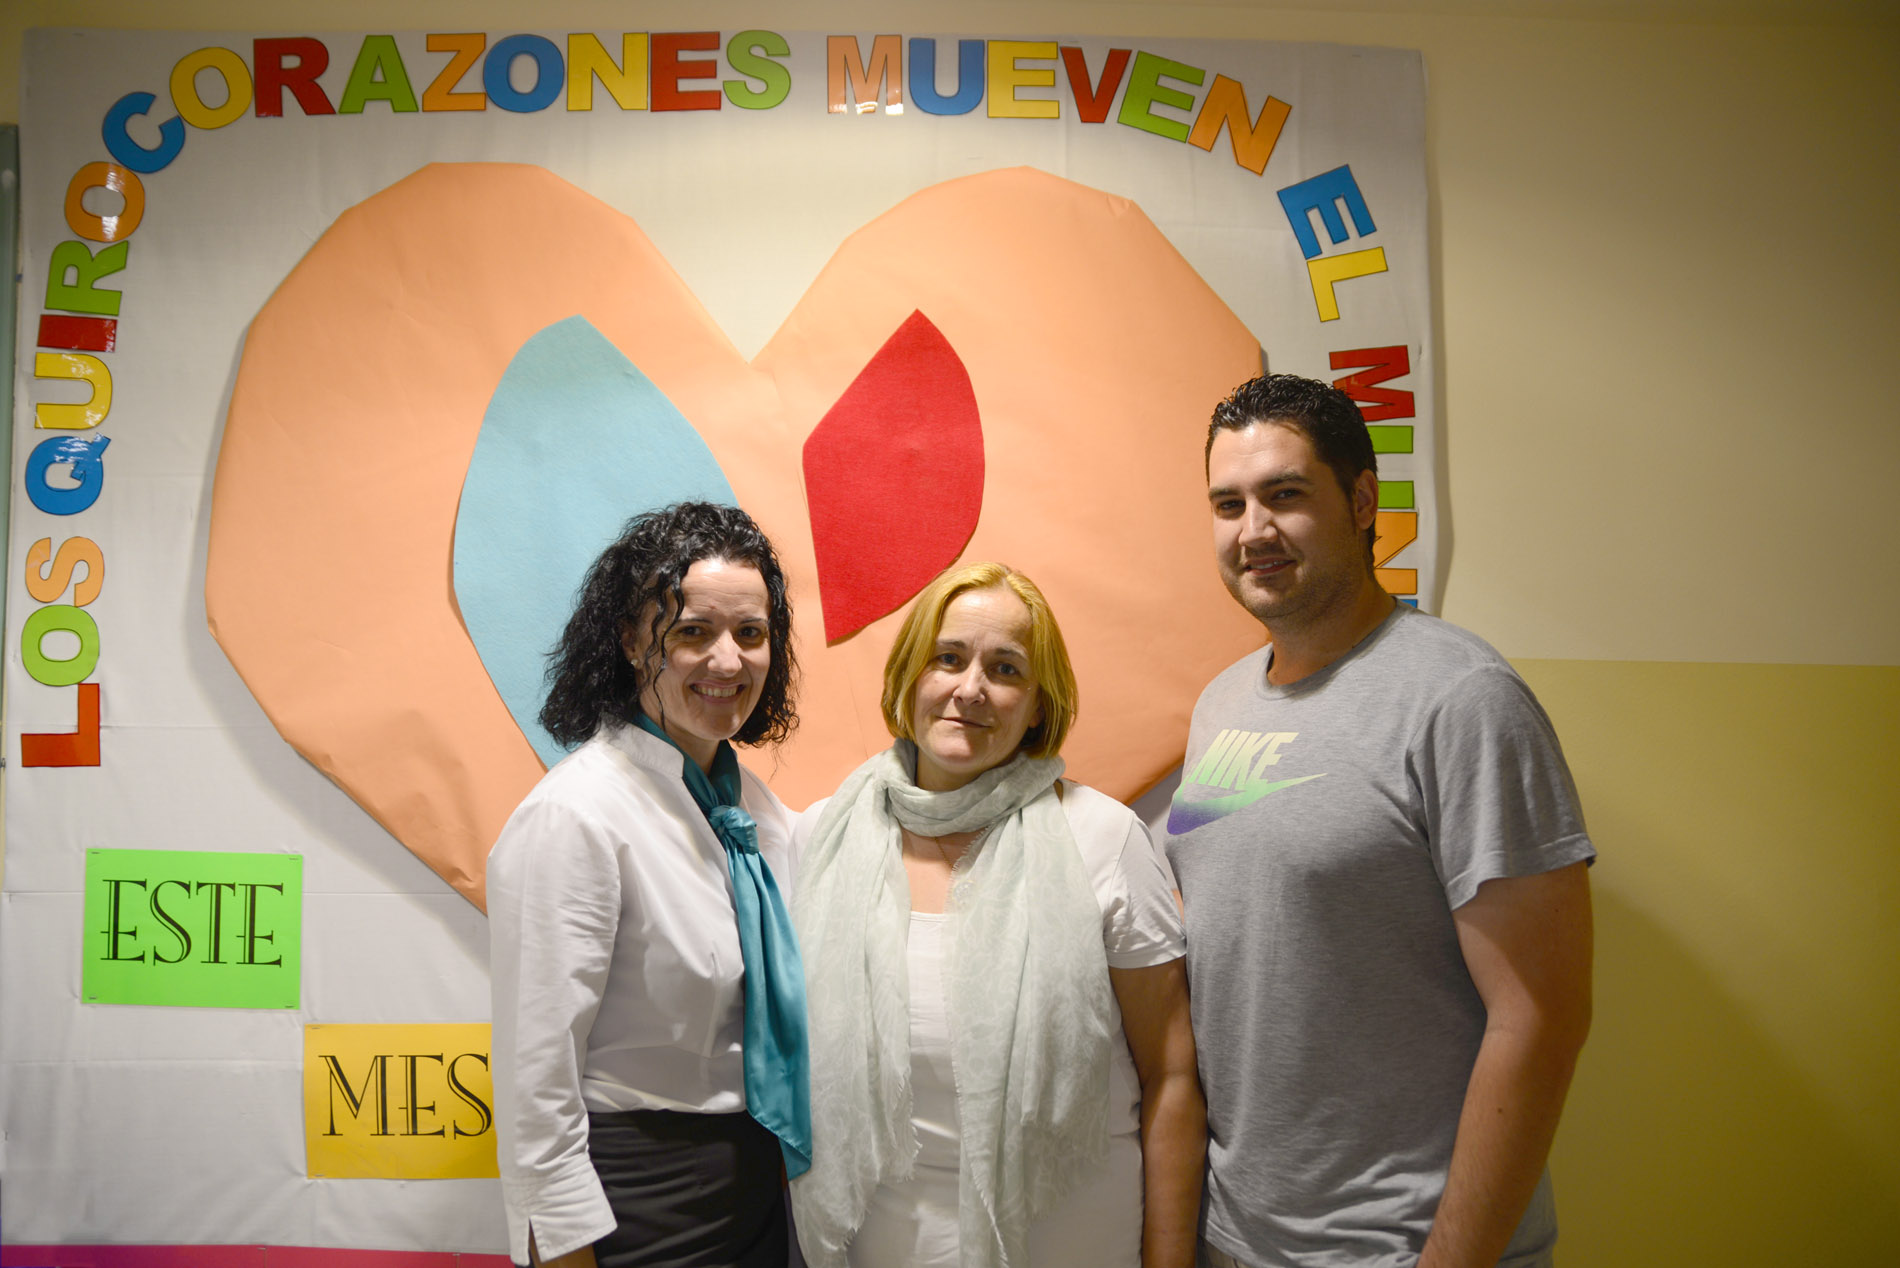 Noelia, Juani y Abel, promotores de "Los quirocorazones mueven el mundo".